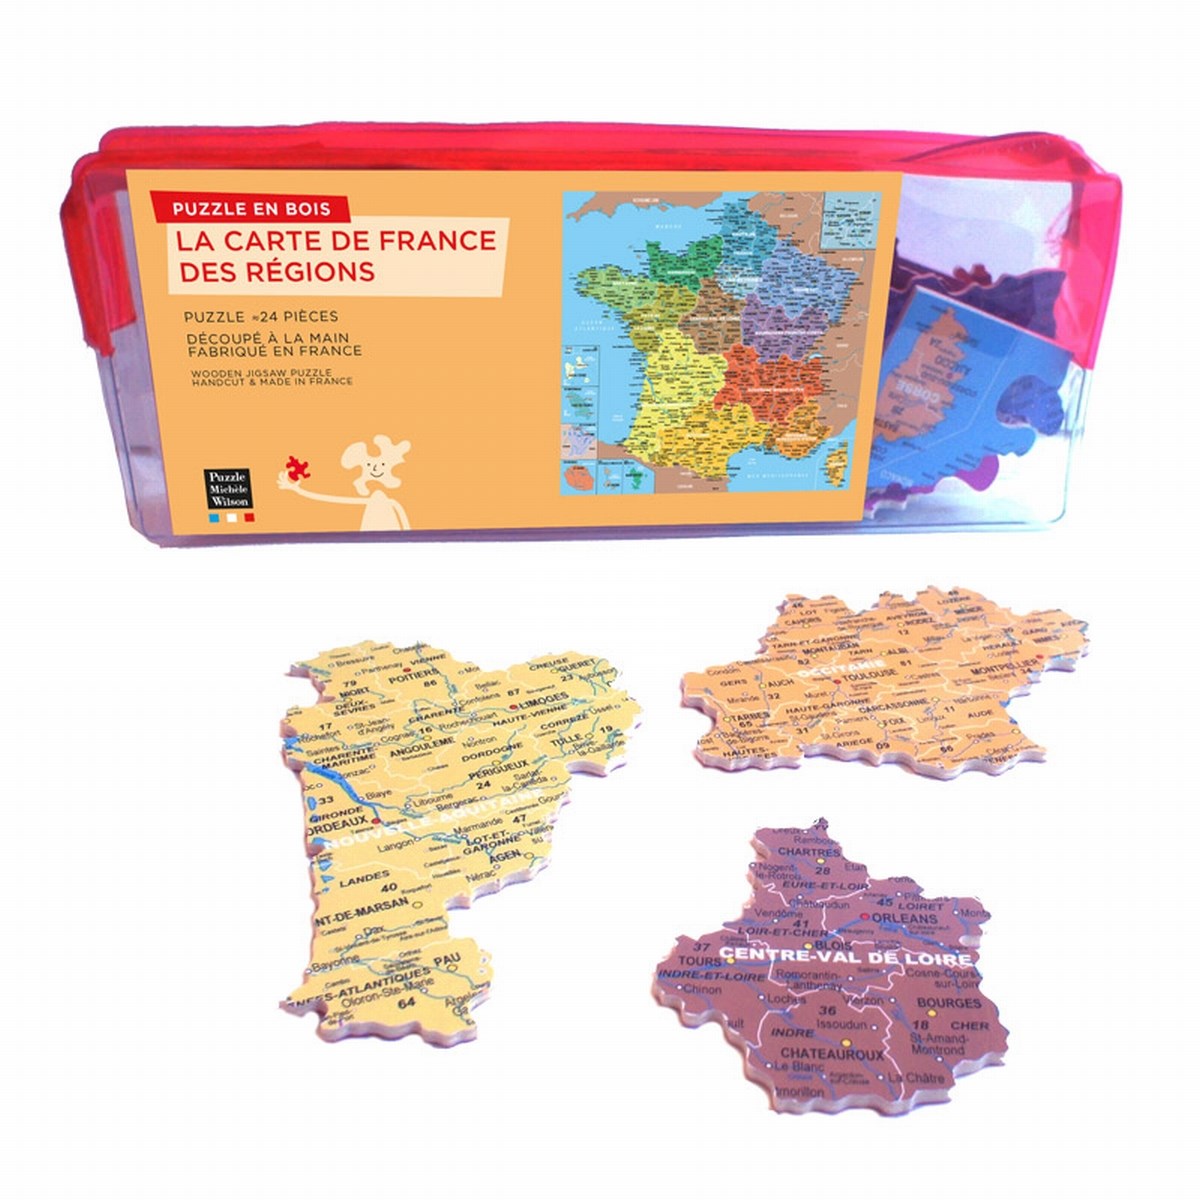 Puzzle 24 pièces carte de france regions